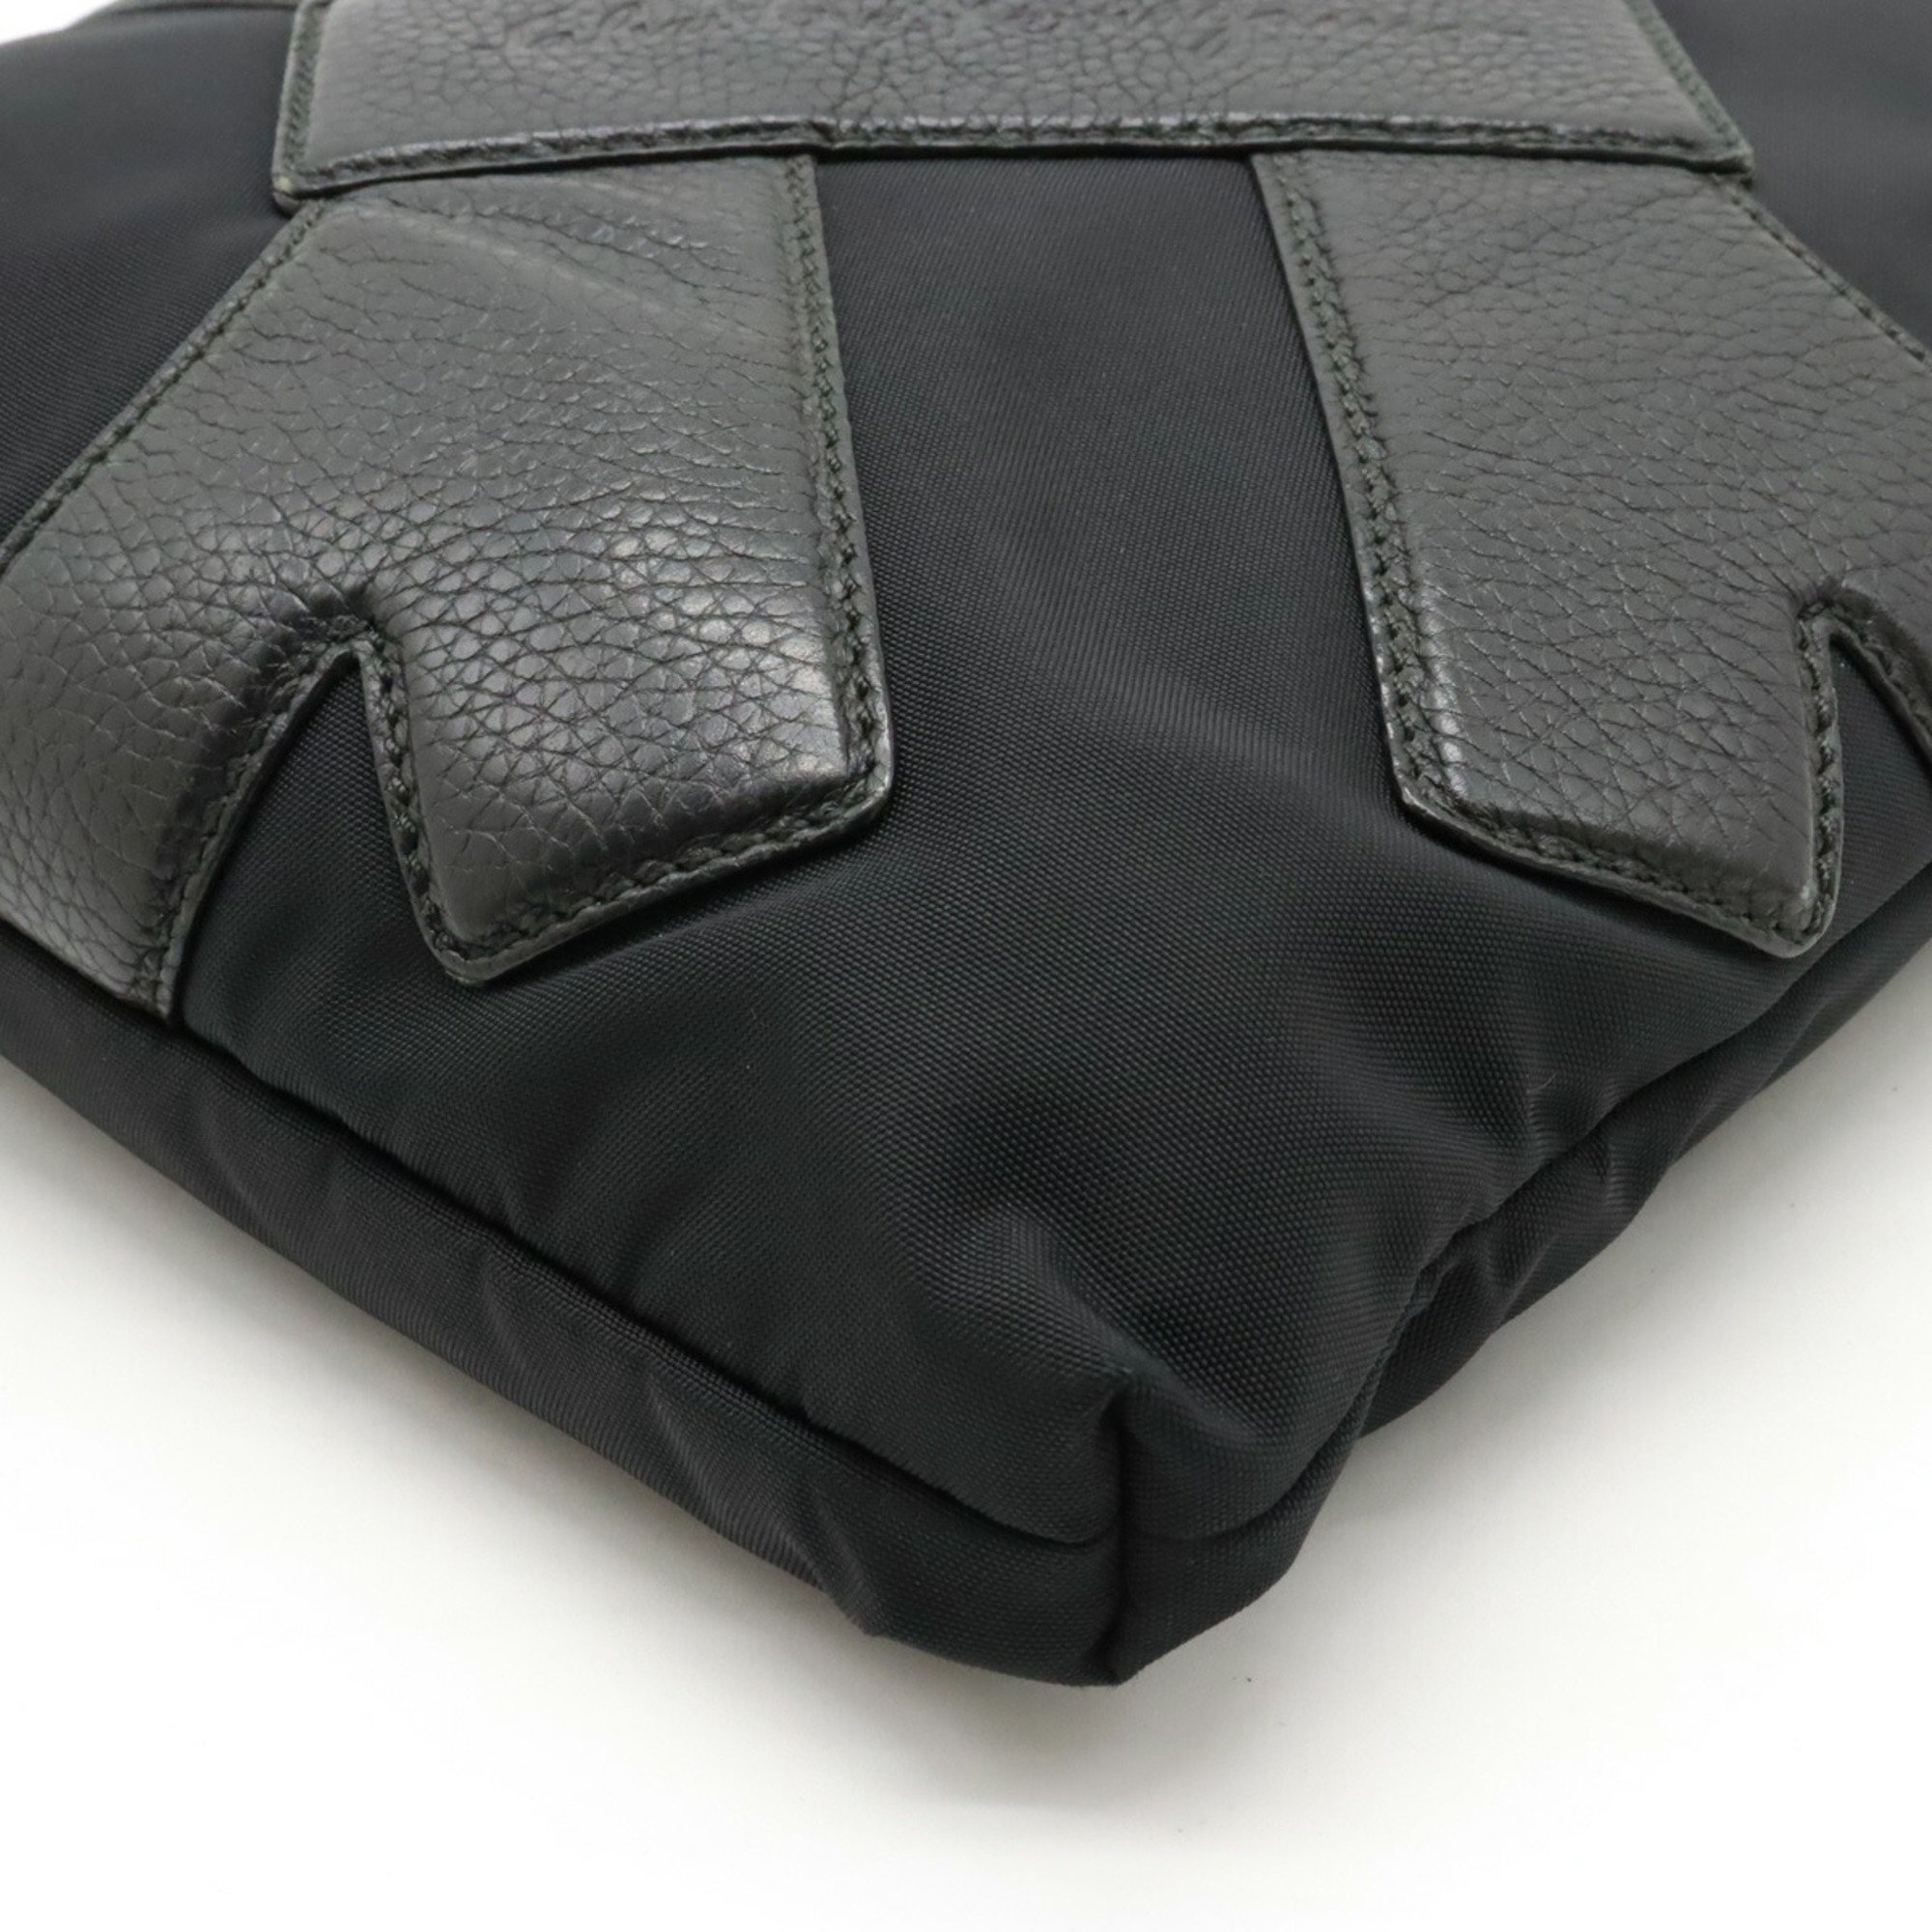 Salvatore Ferragamo Gancini shoulder bag in nylon canvas and leather black